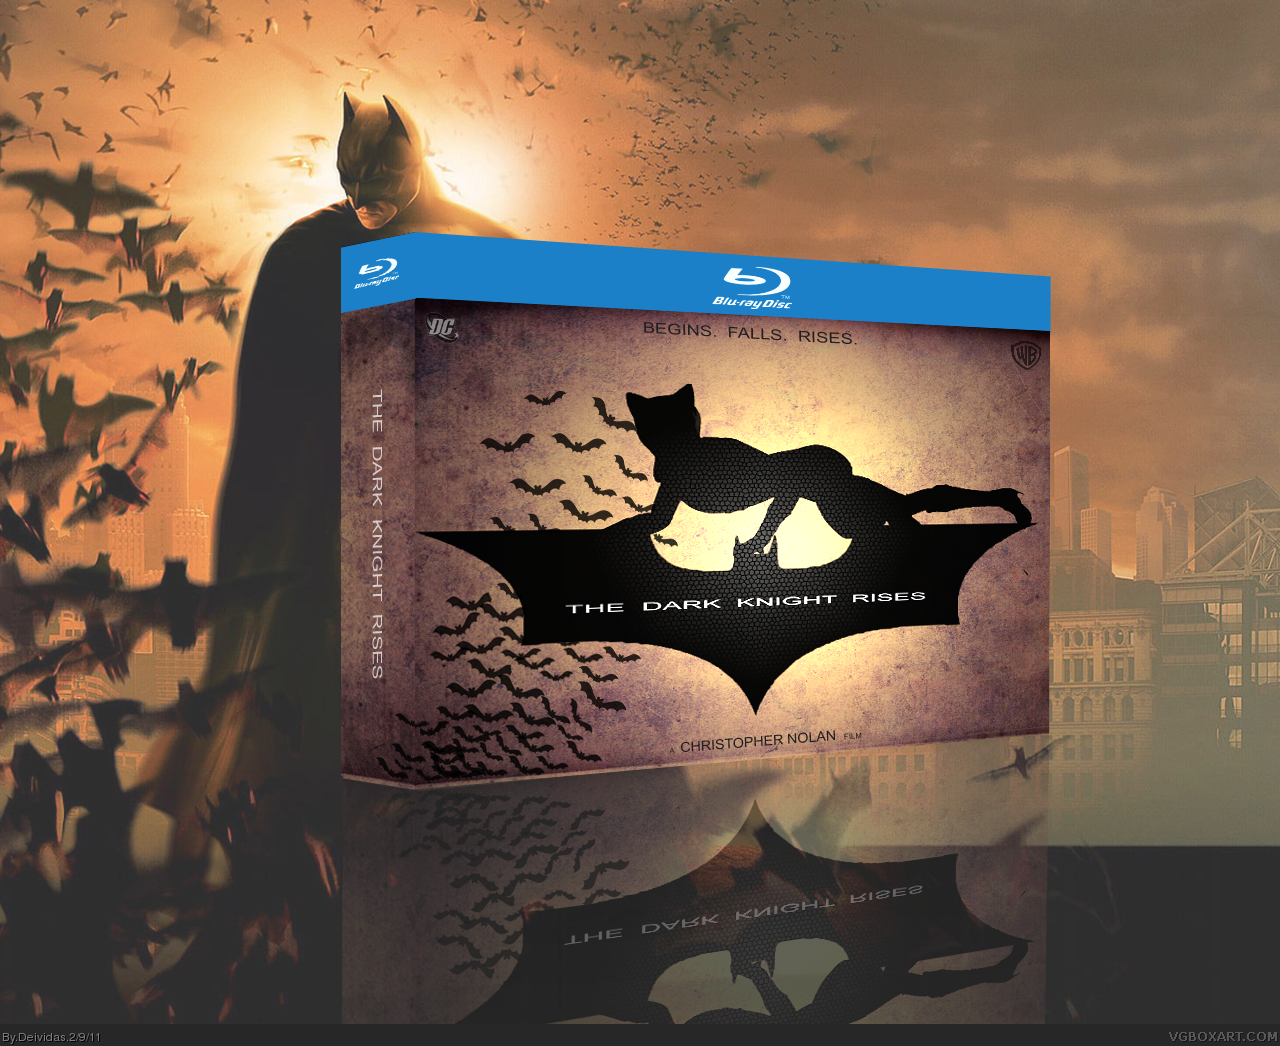 The Dark Knight Rises box cover